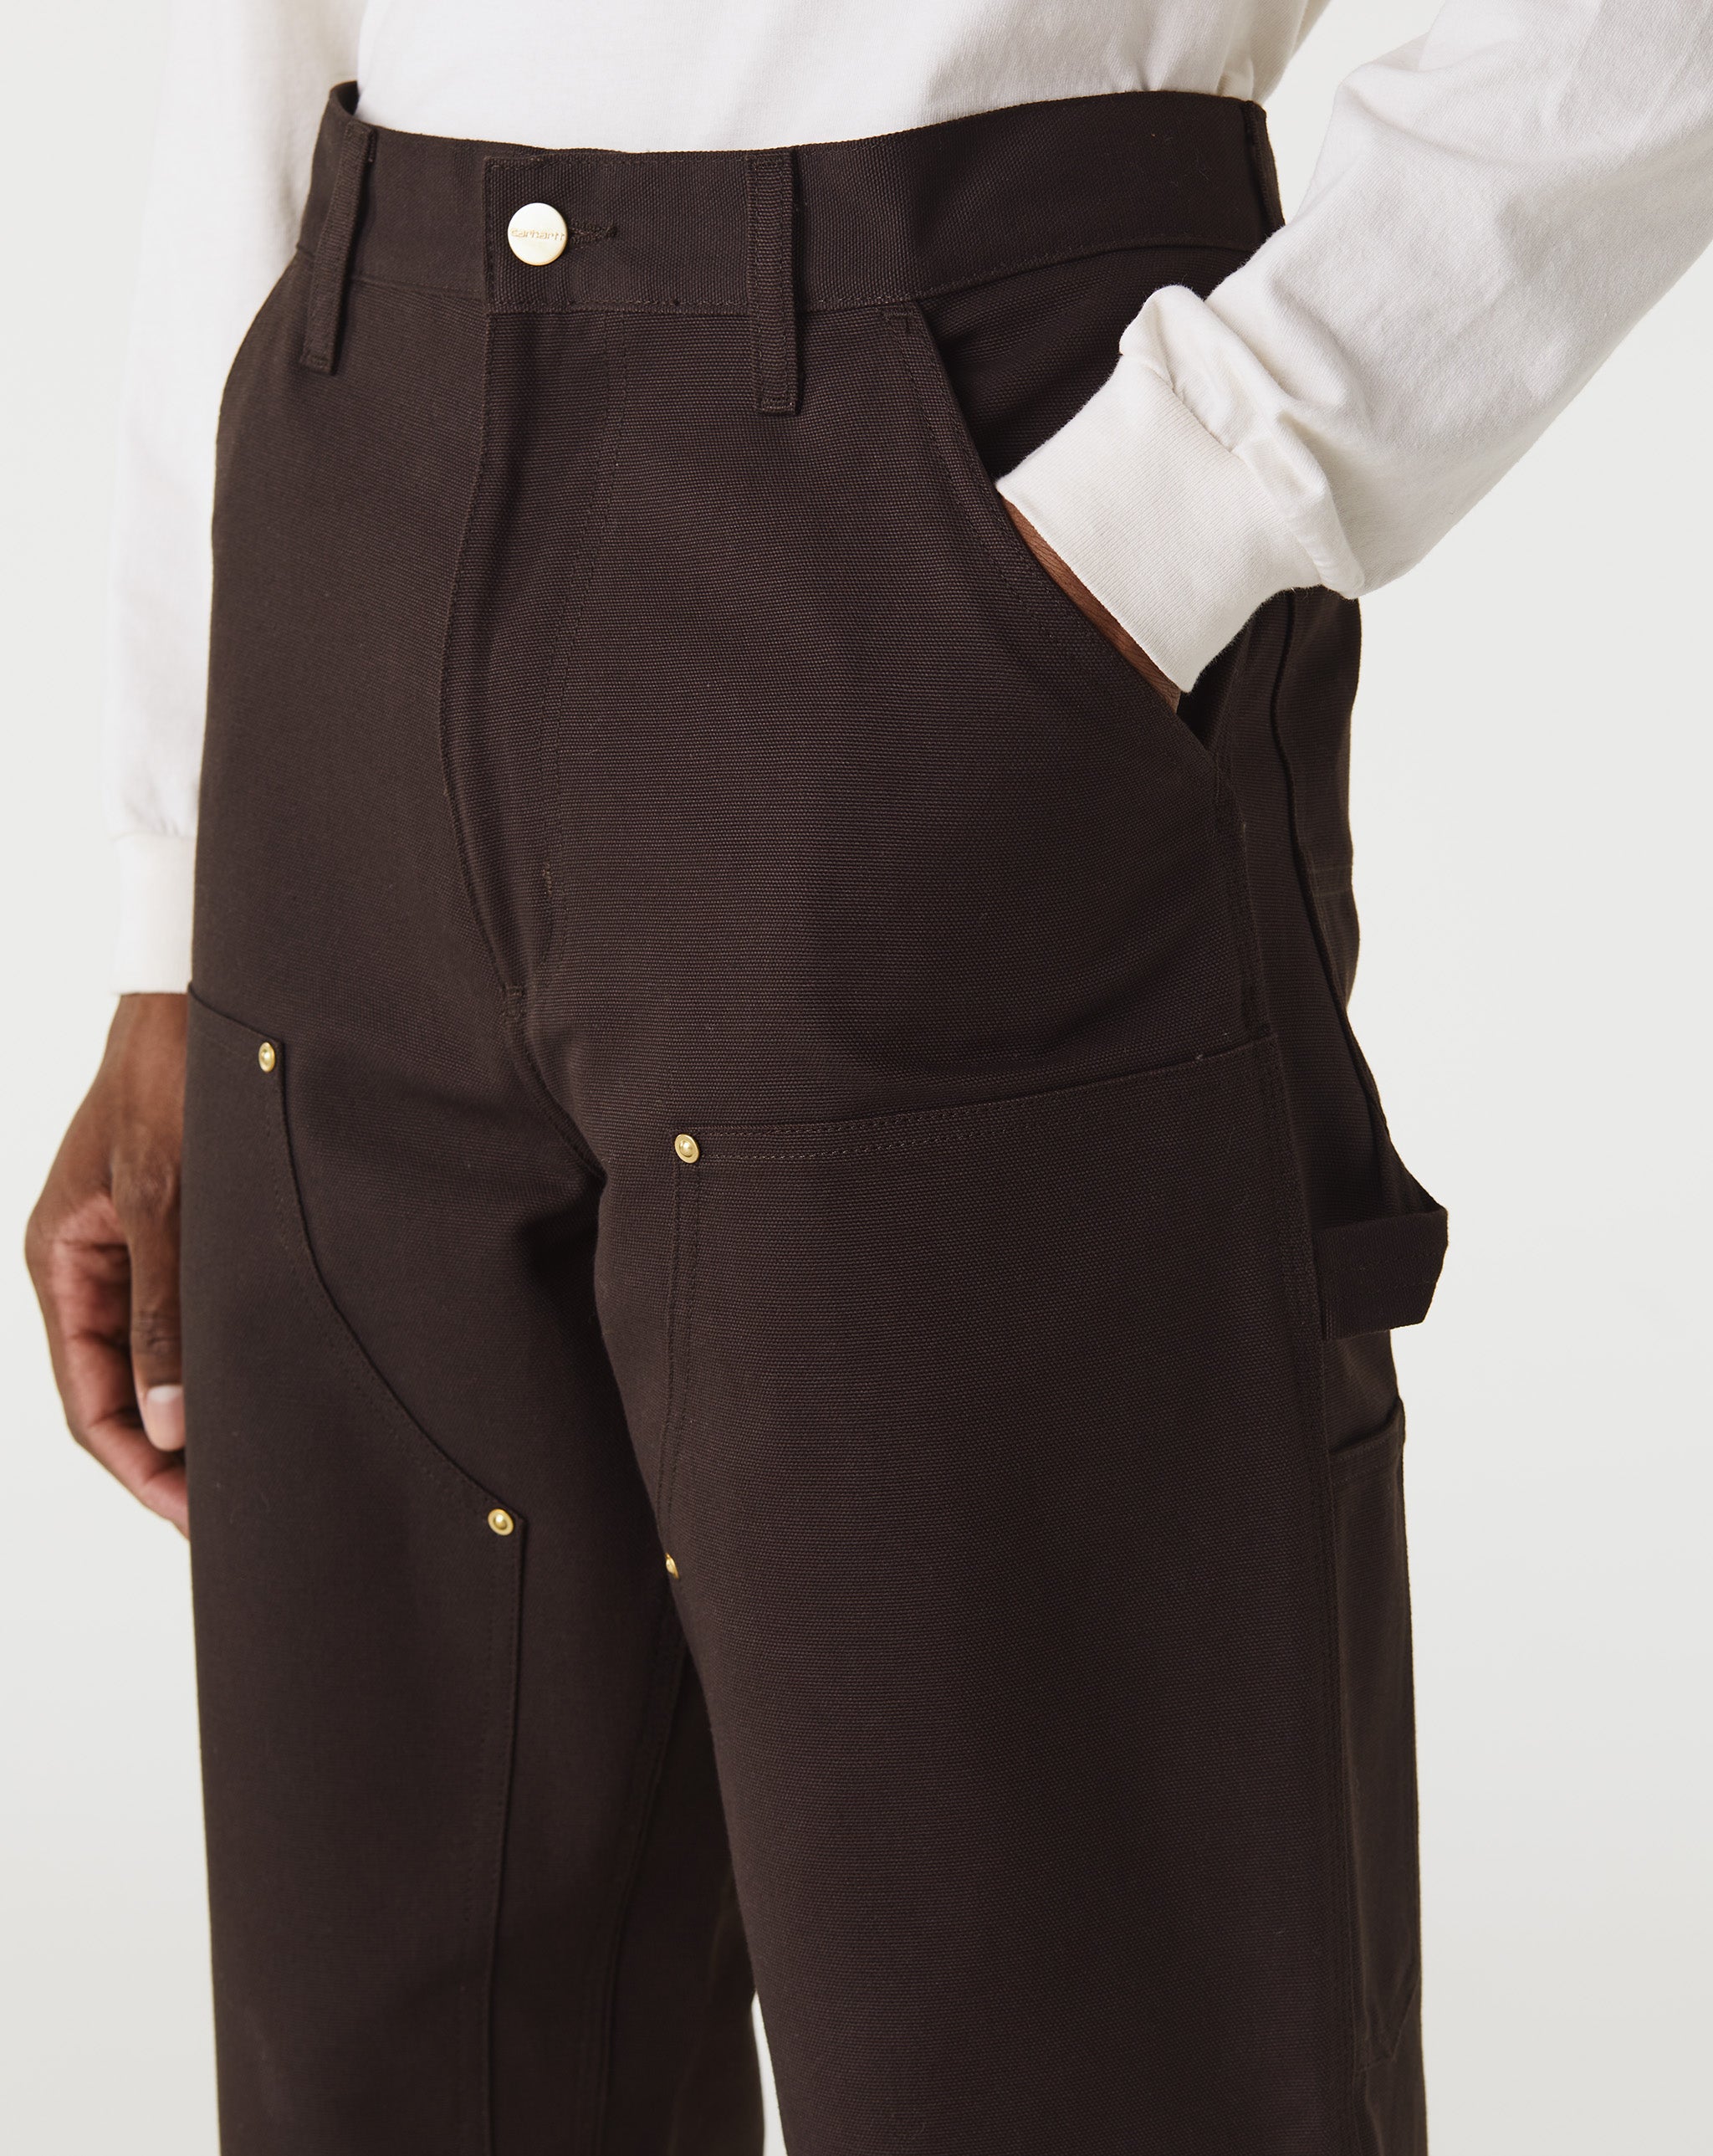 Carhartt WIP Fabric Interest Mini Slip Dresss  - Cheap Urlfreeze Jordan outlet